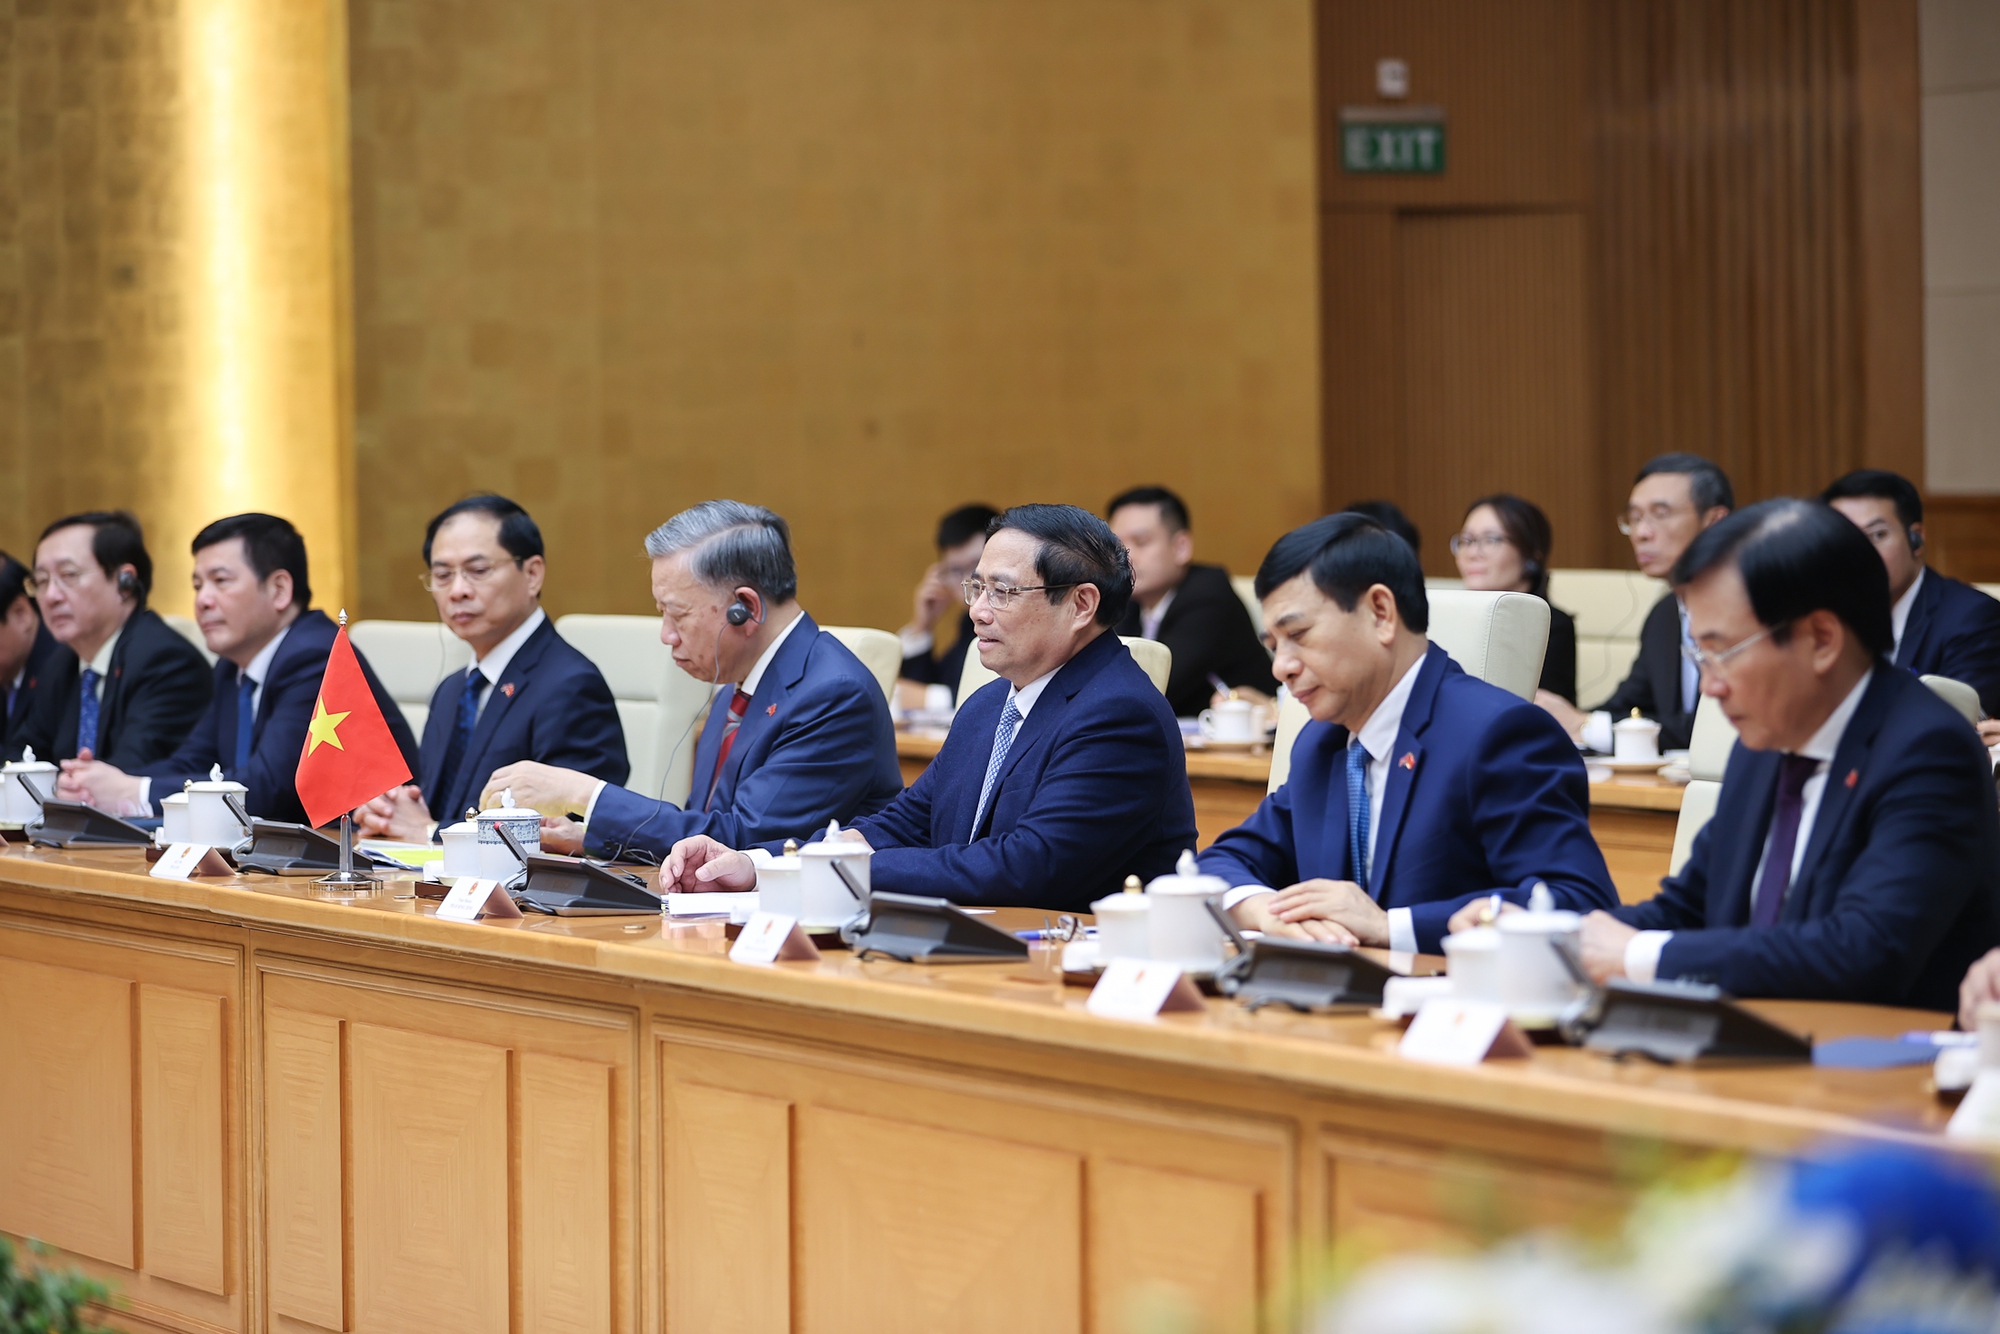 Hai nhà lãnh đạo bày tỏ hài lòng trước những bước phát triển tích cực của quan hệ Việt Nam - Campuchia thời gian qua - Ảnh: VGP/Nhật Bắc